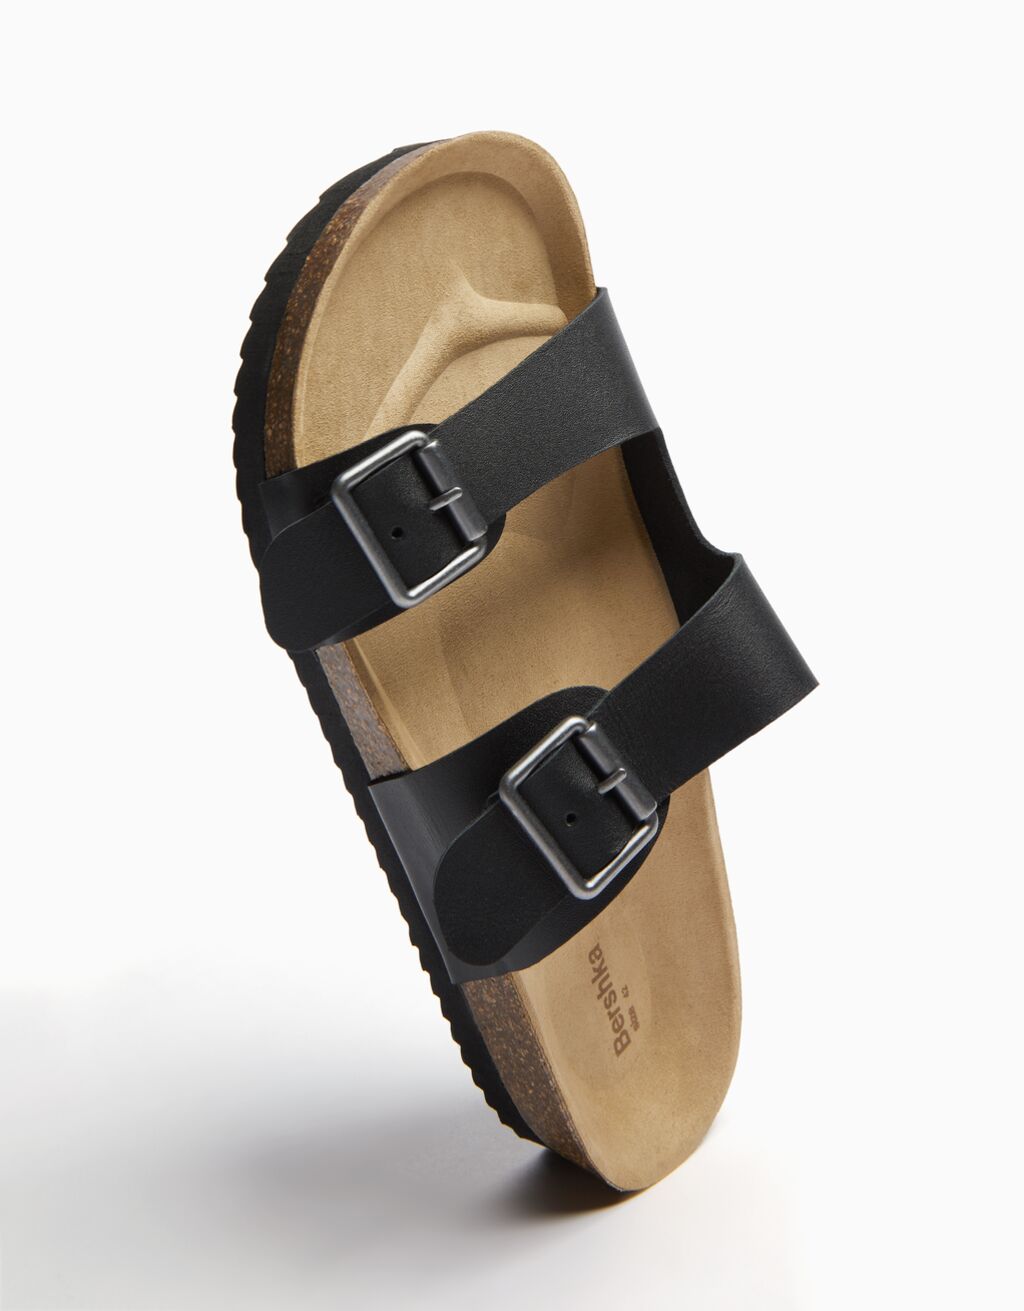 Men’s LEATHER sandals with buckles - Men | Bershka